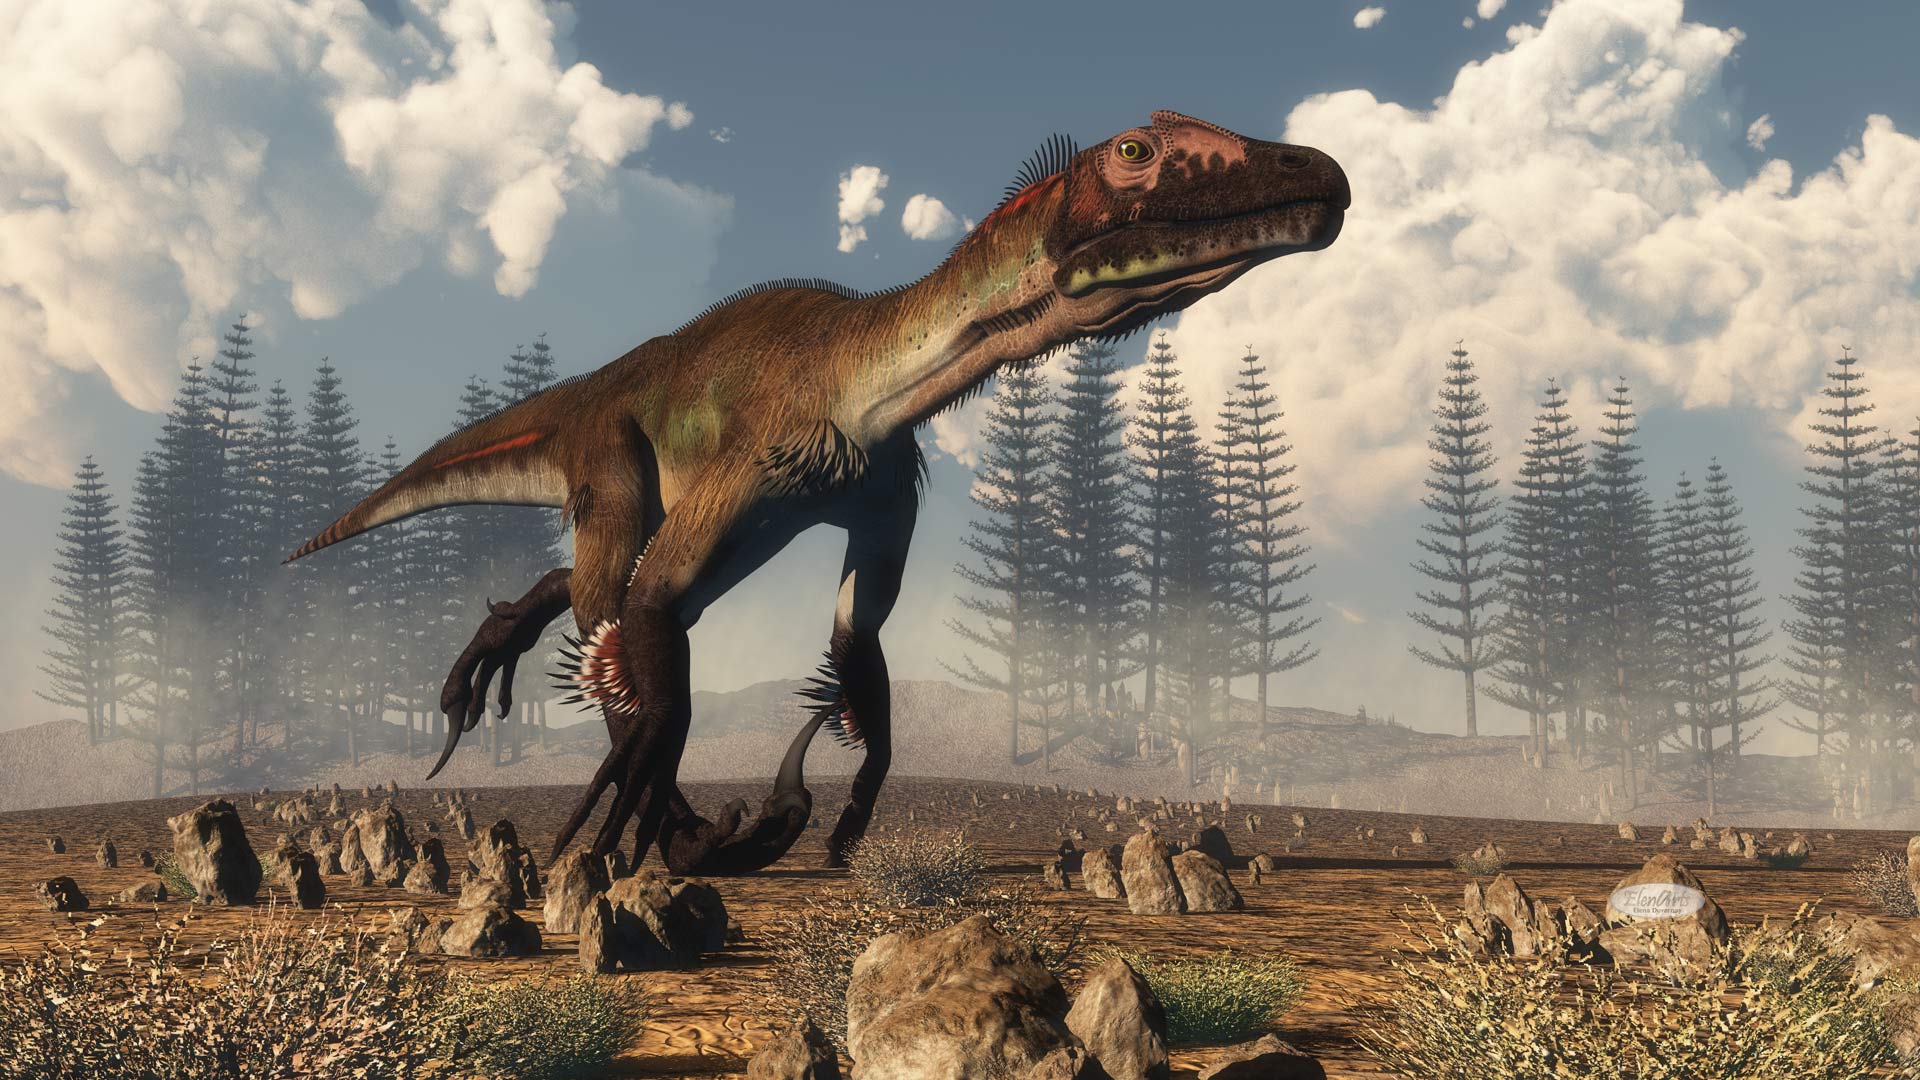 Utahraptor dinosaur in the desert – 3D render